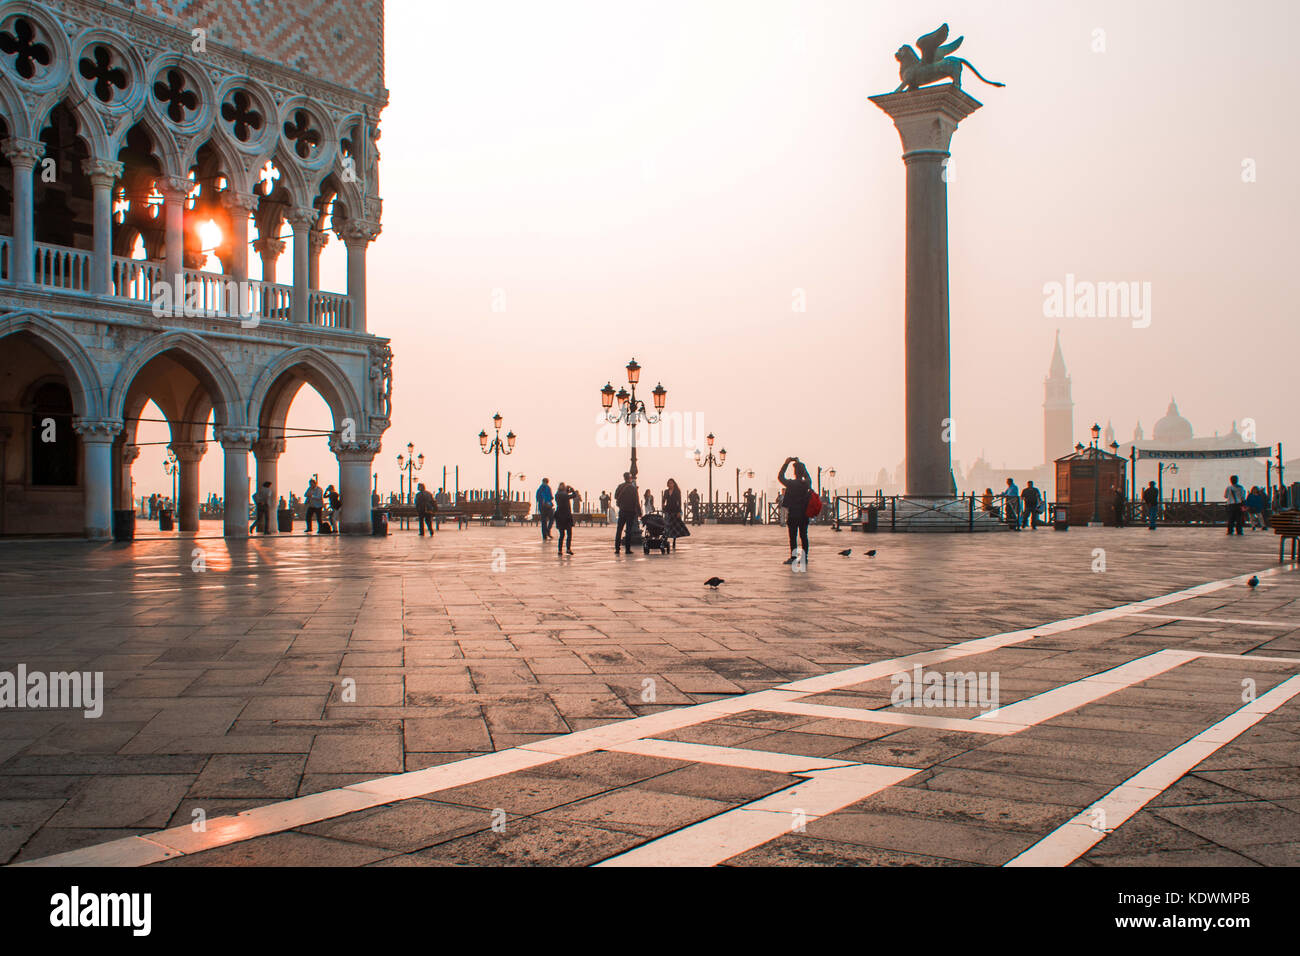 Venecia, Italia - Octubre 6, 2017: Mañana la Piazza San Marco, los turistas a pie de plaza Foto de stock